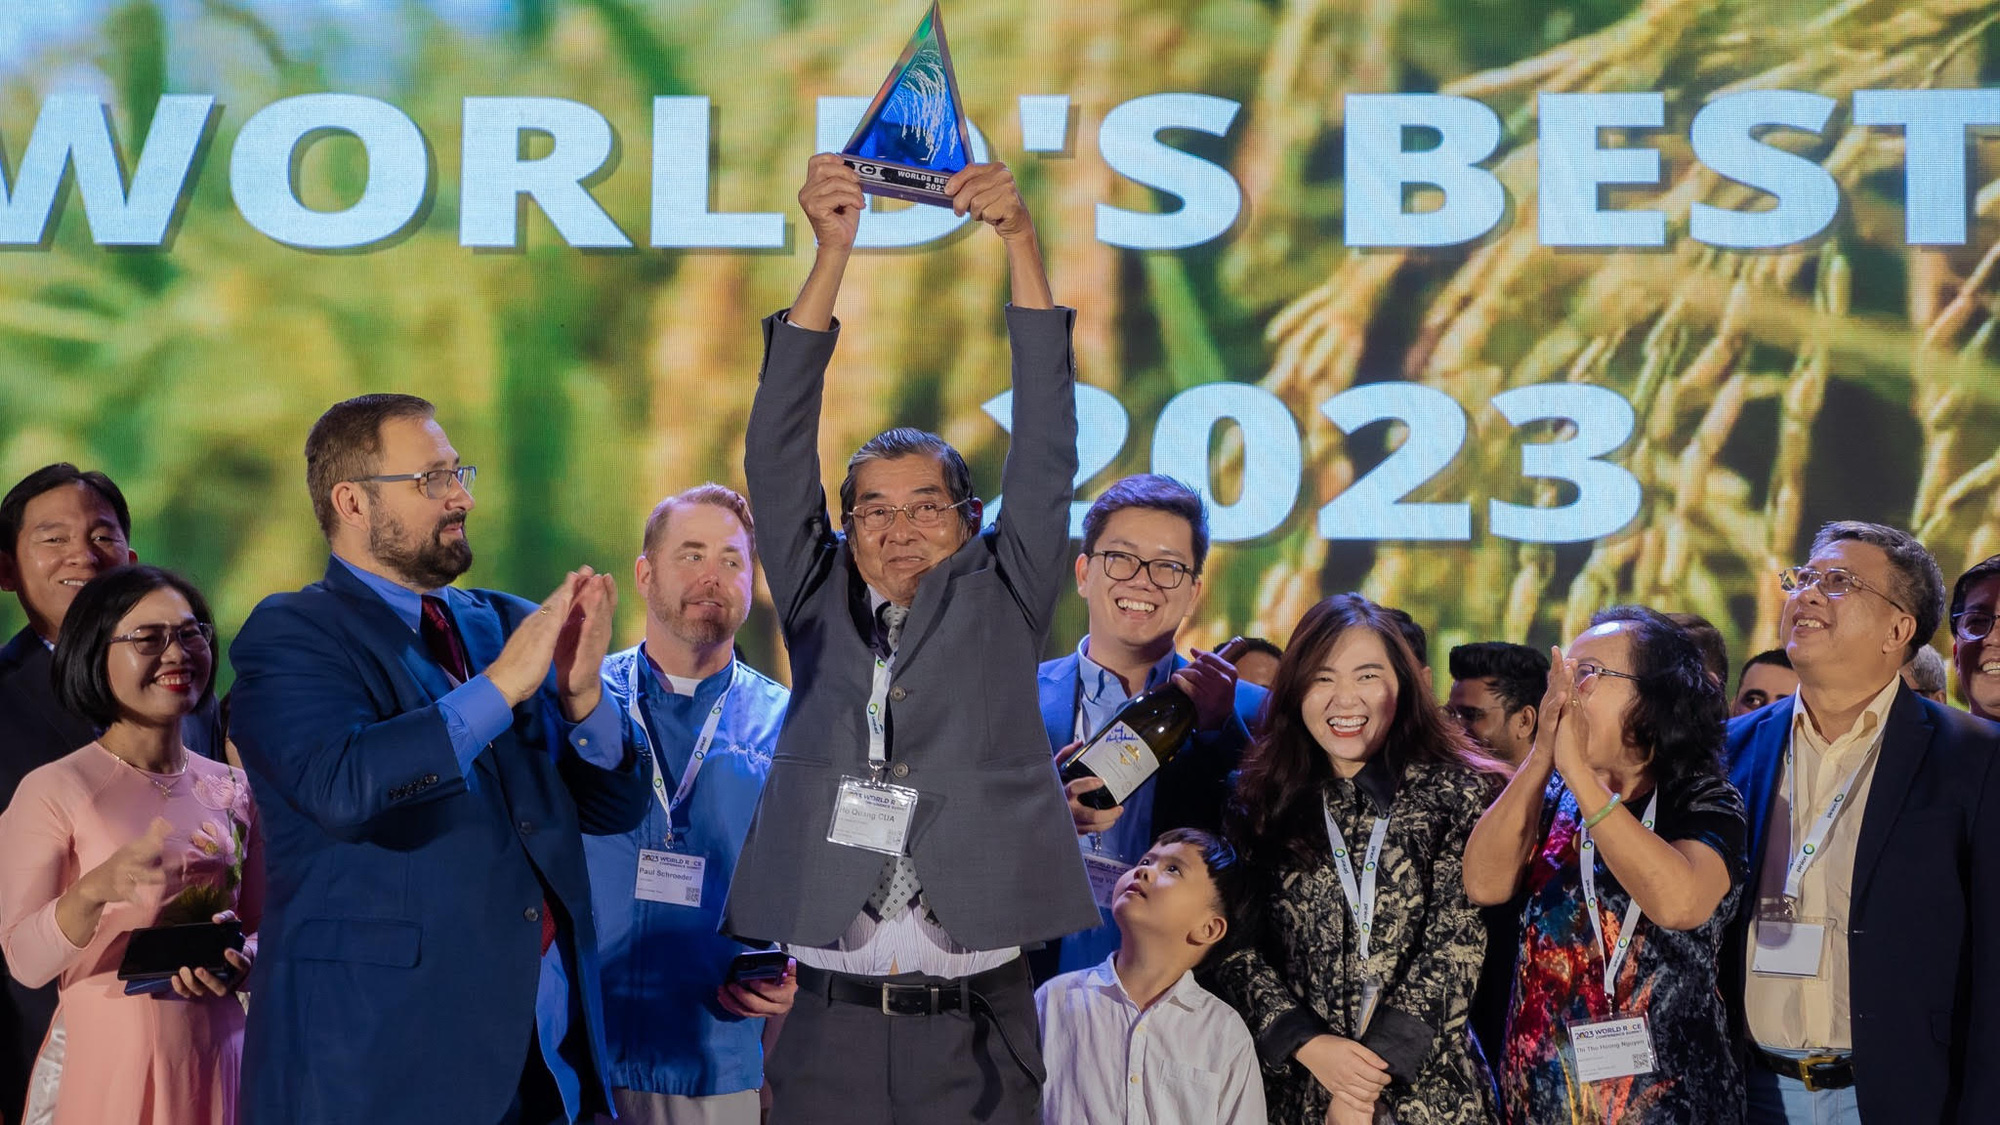 MỚI: Ban tổ chức công bố gạo ST25 đoạt giải nhất gạo ngon nhất thế giới 2023 - Ảnh 1.